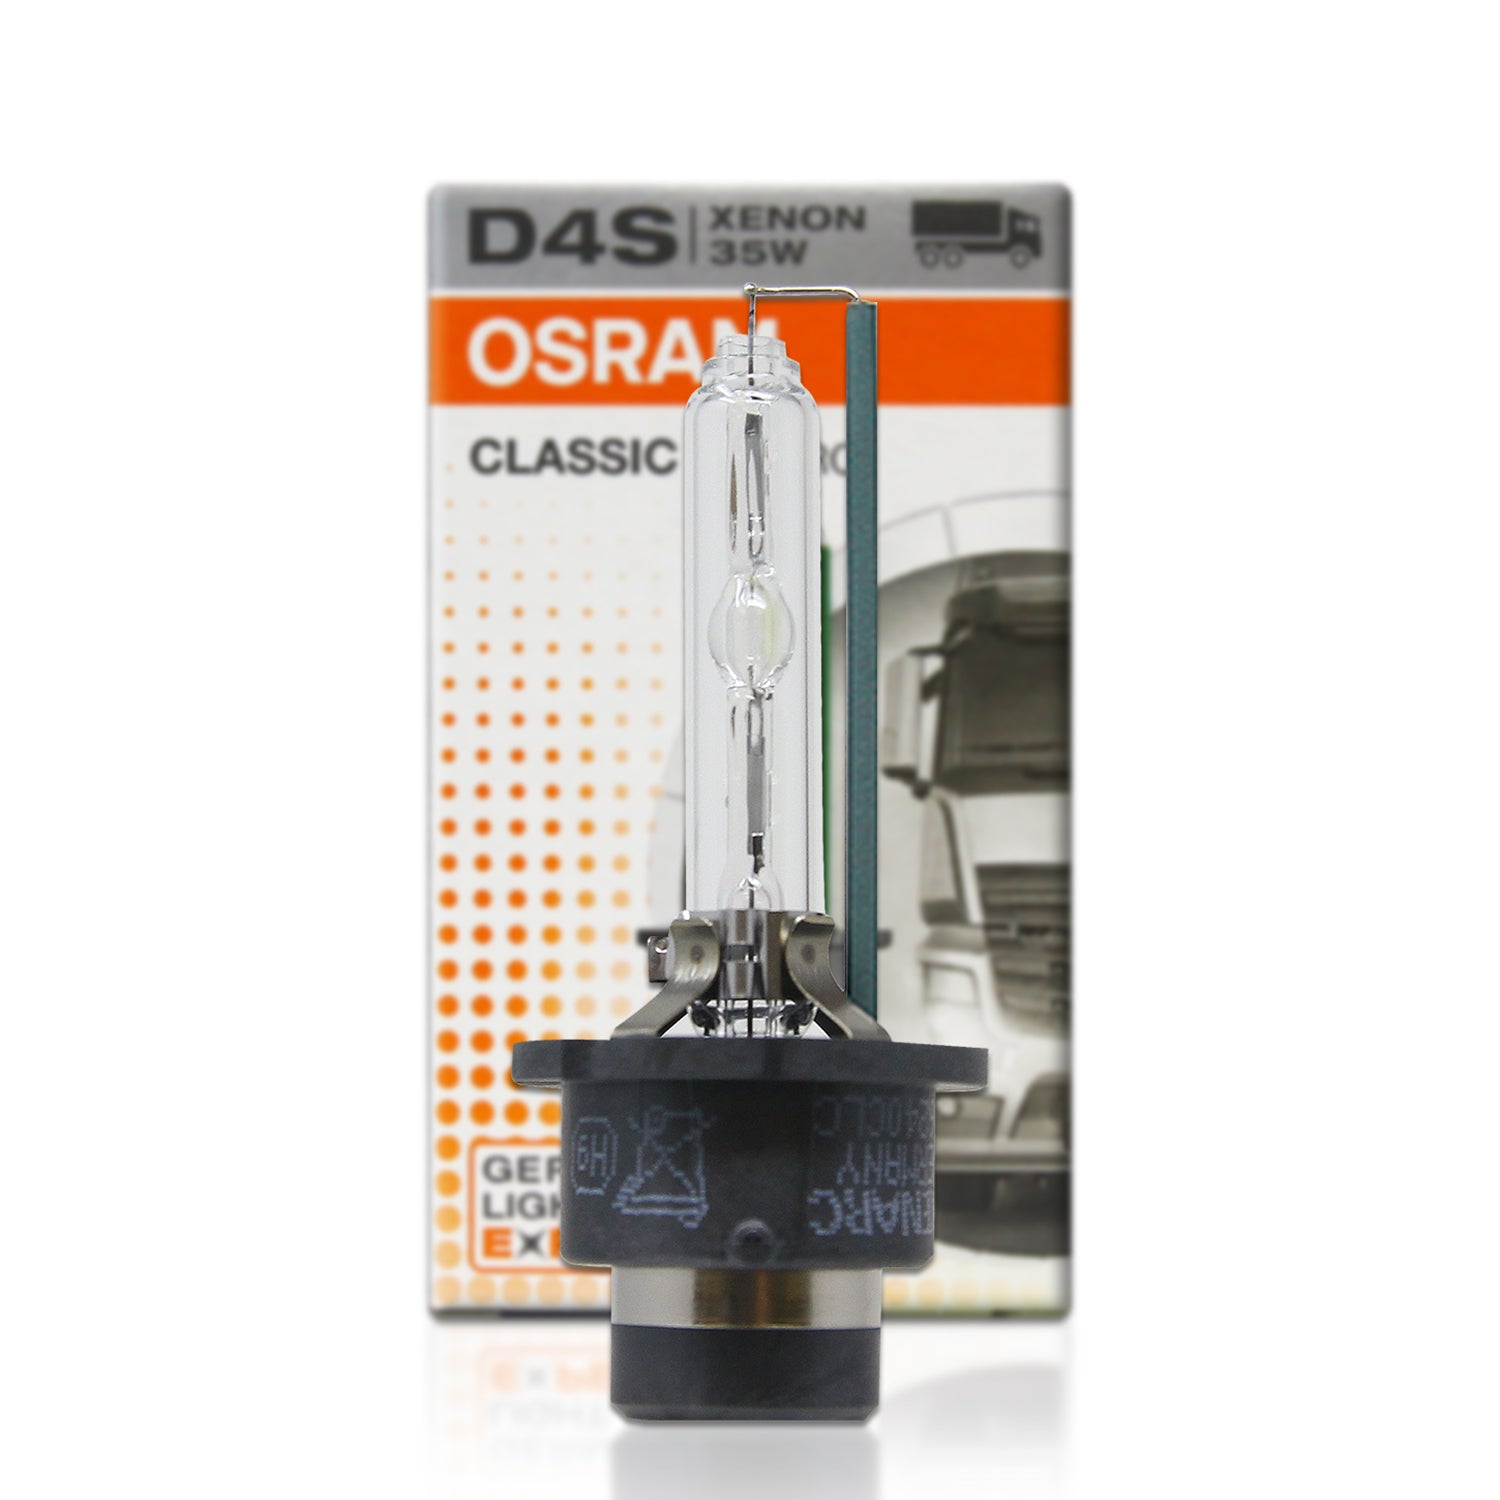 Osram OSRAM XENARC NIGHT BREAKER LASER D4S, & 20…